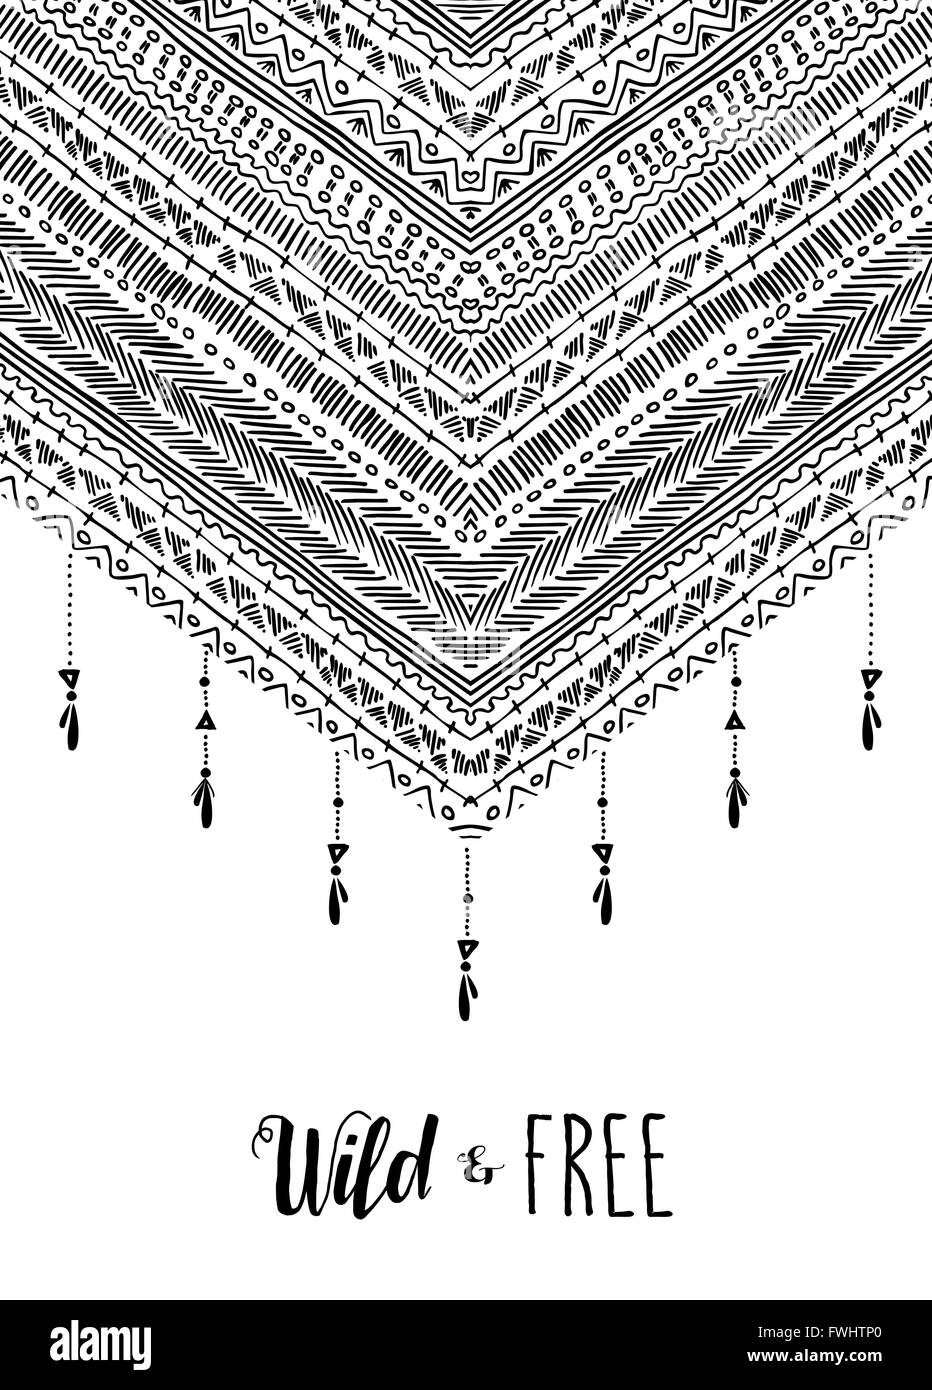 Boho wild und frei Text Zitat Poster mit tribal inspiriert Streifen, schwarz / weiß-Design und Dekoration-Elemente. EPS10 Vektor. Stock Vektor